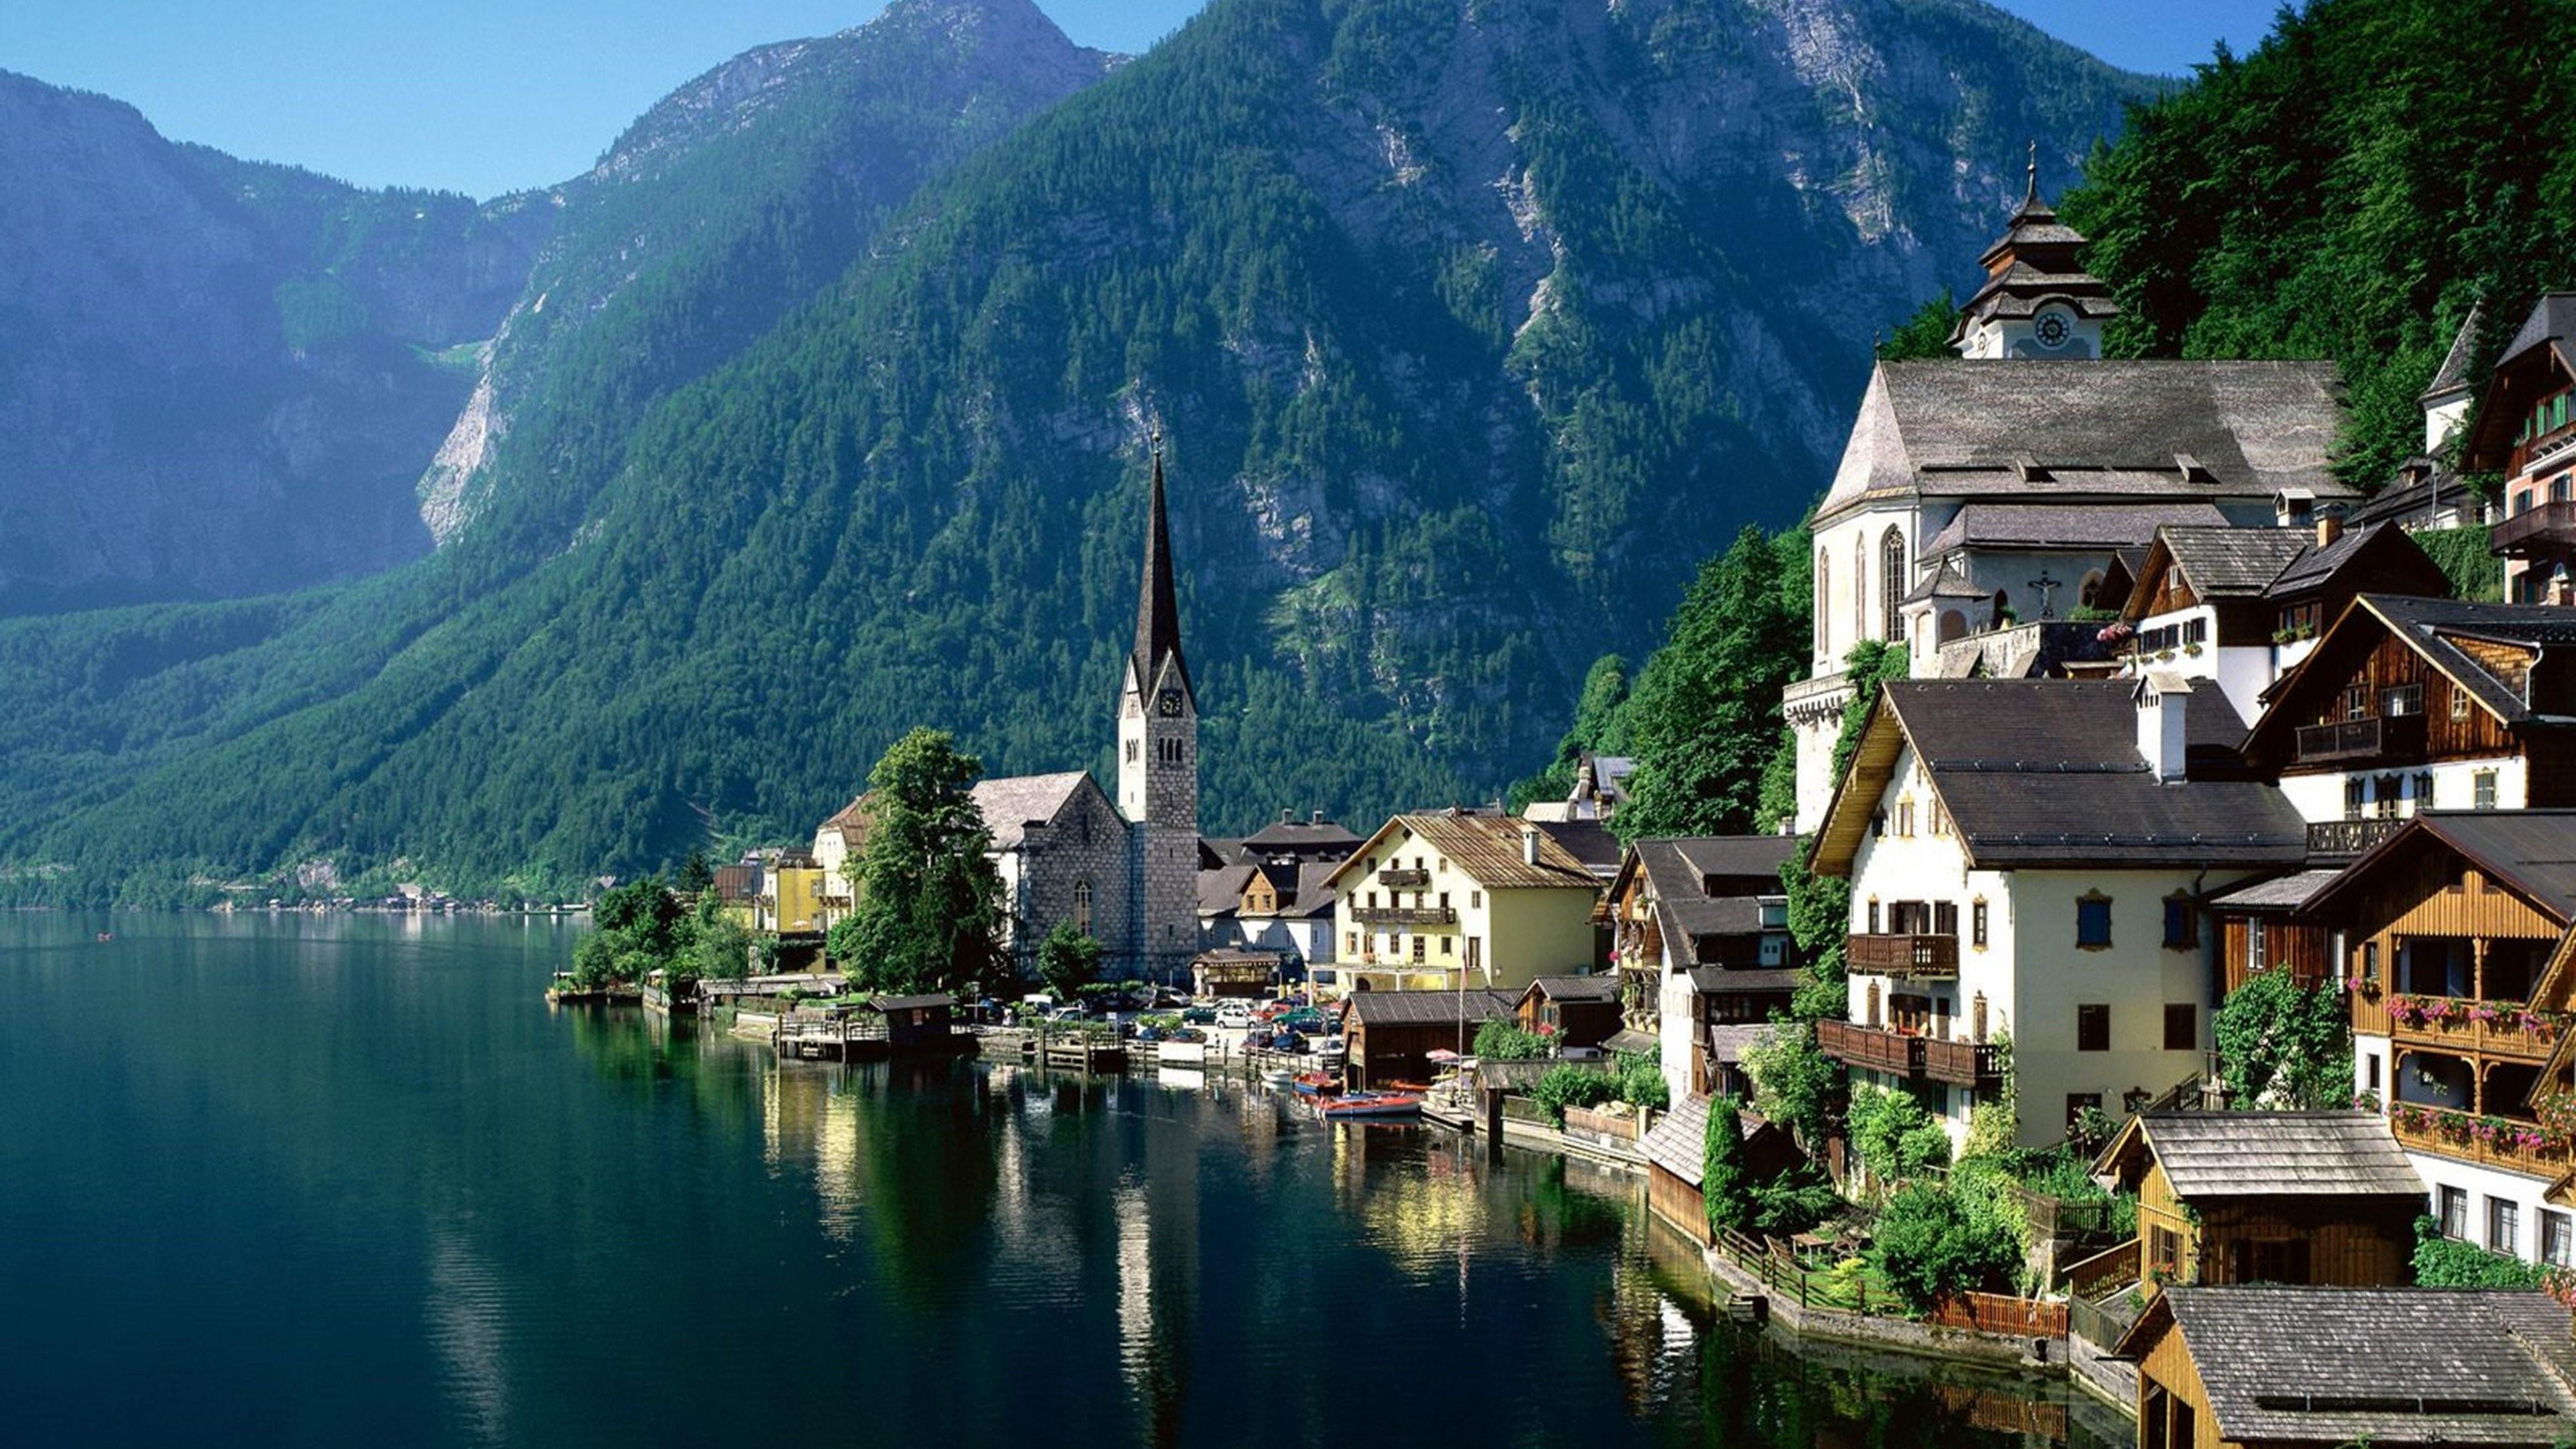 Wonderful Mountain Village - Hallstatt, Austria 4K UltraHD ...